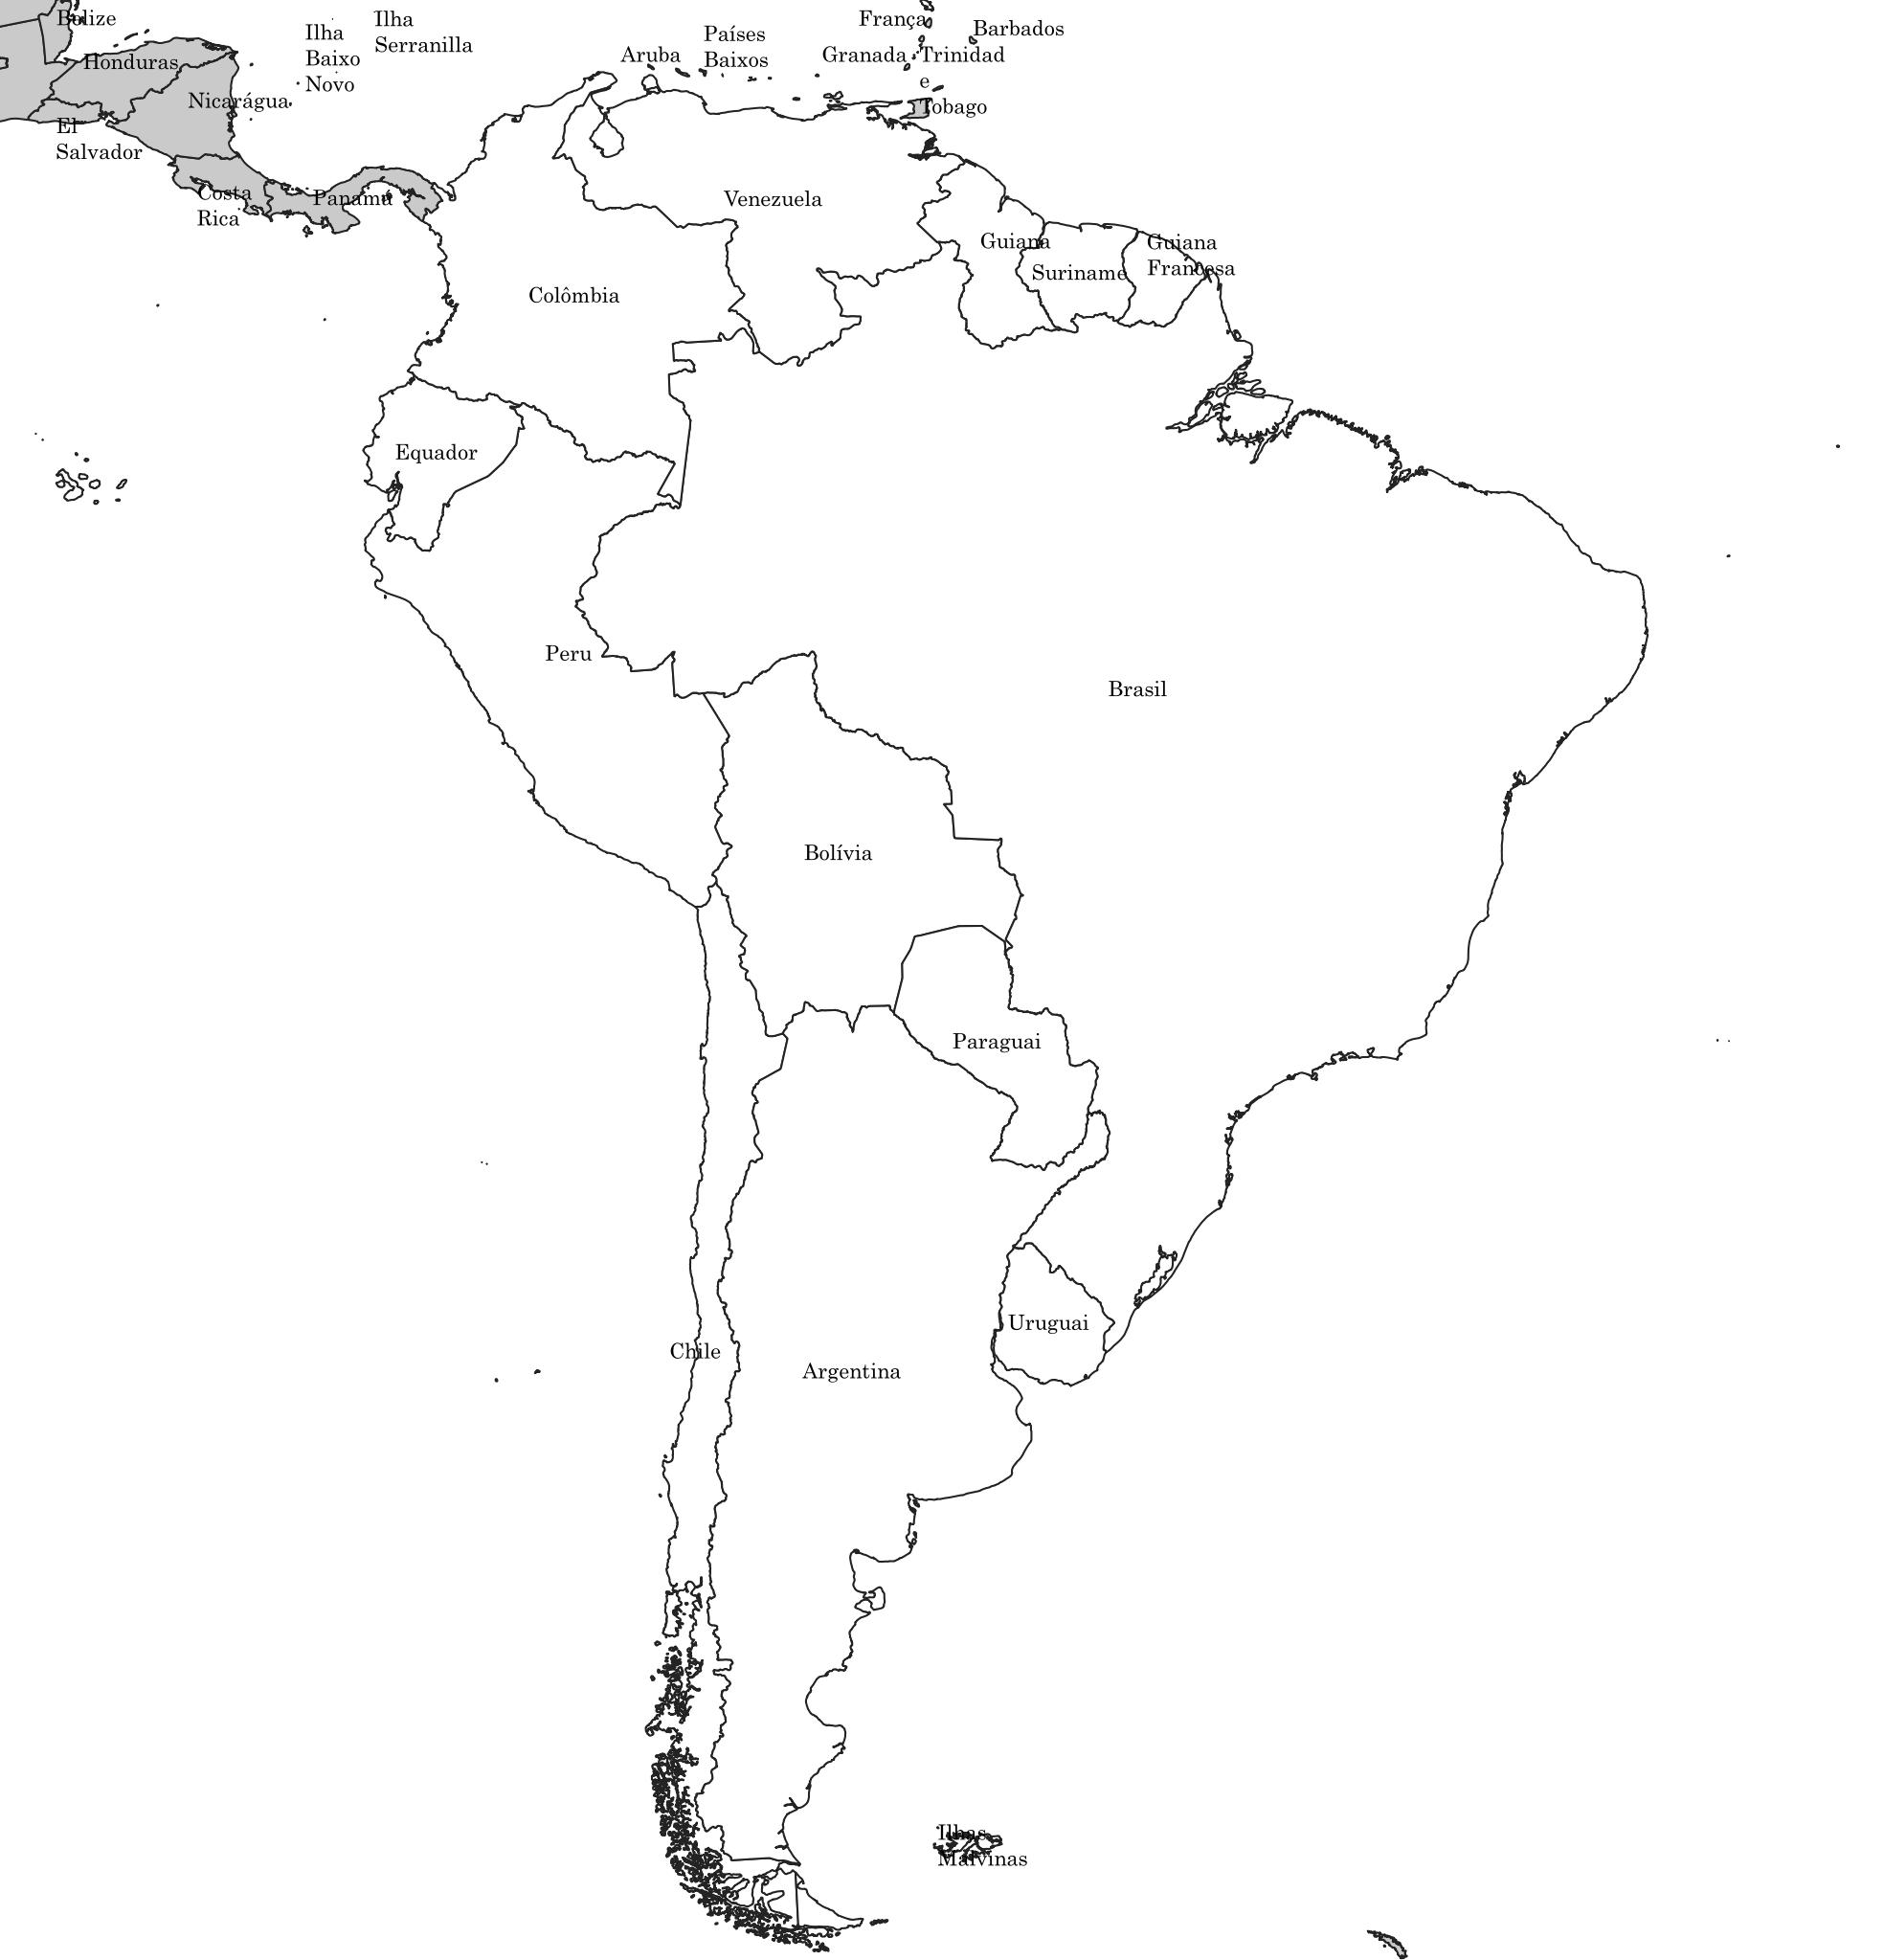 Mapa da América do Sul em preto e branco